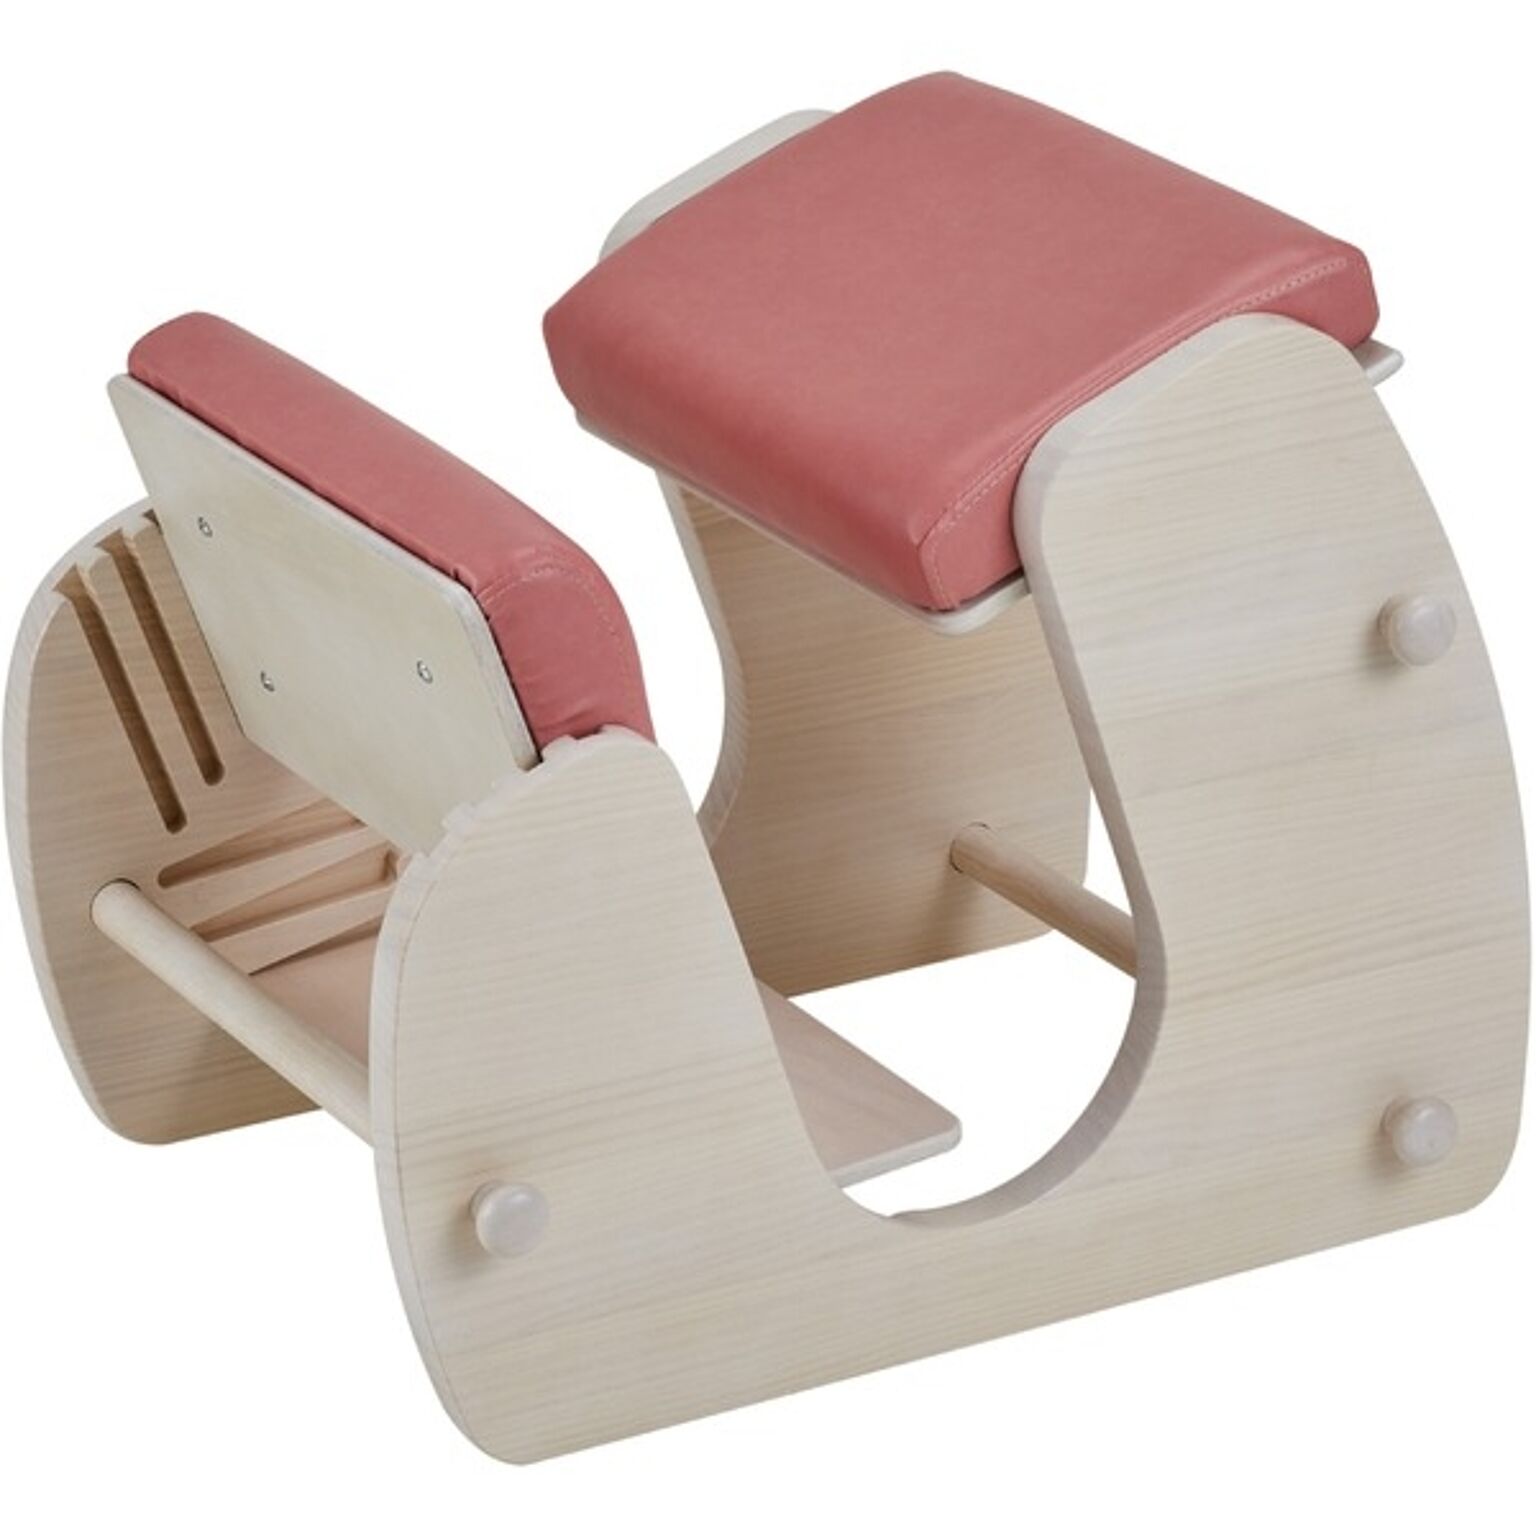 デスクチェア 学習椅子 幅51.5cm ホワイト×フローラルピンク 木製 合皮 Keepy プロポーションチェア 組立品 猫背 姿勢【代引不可】